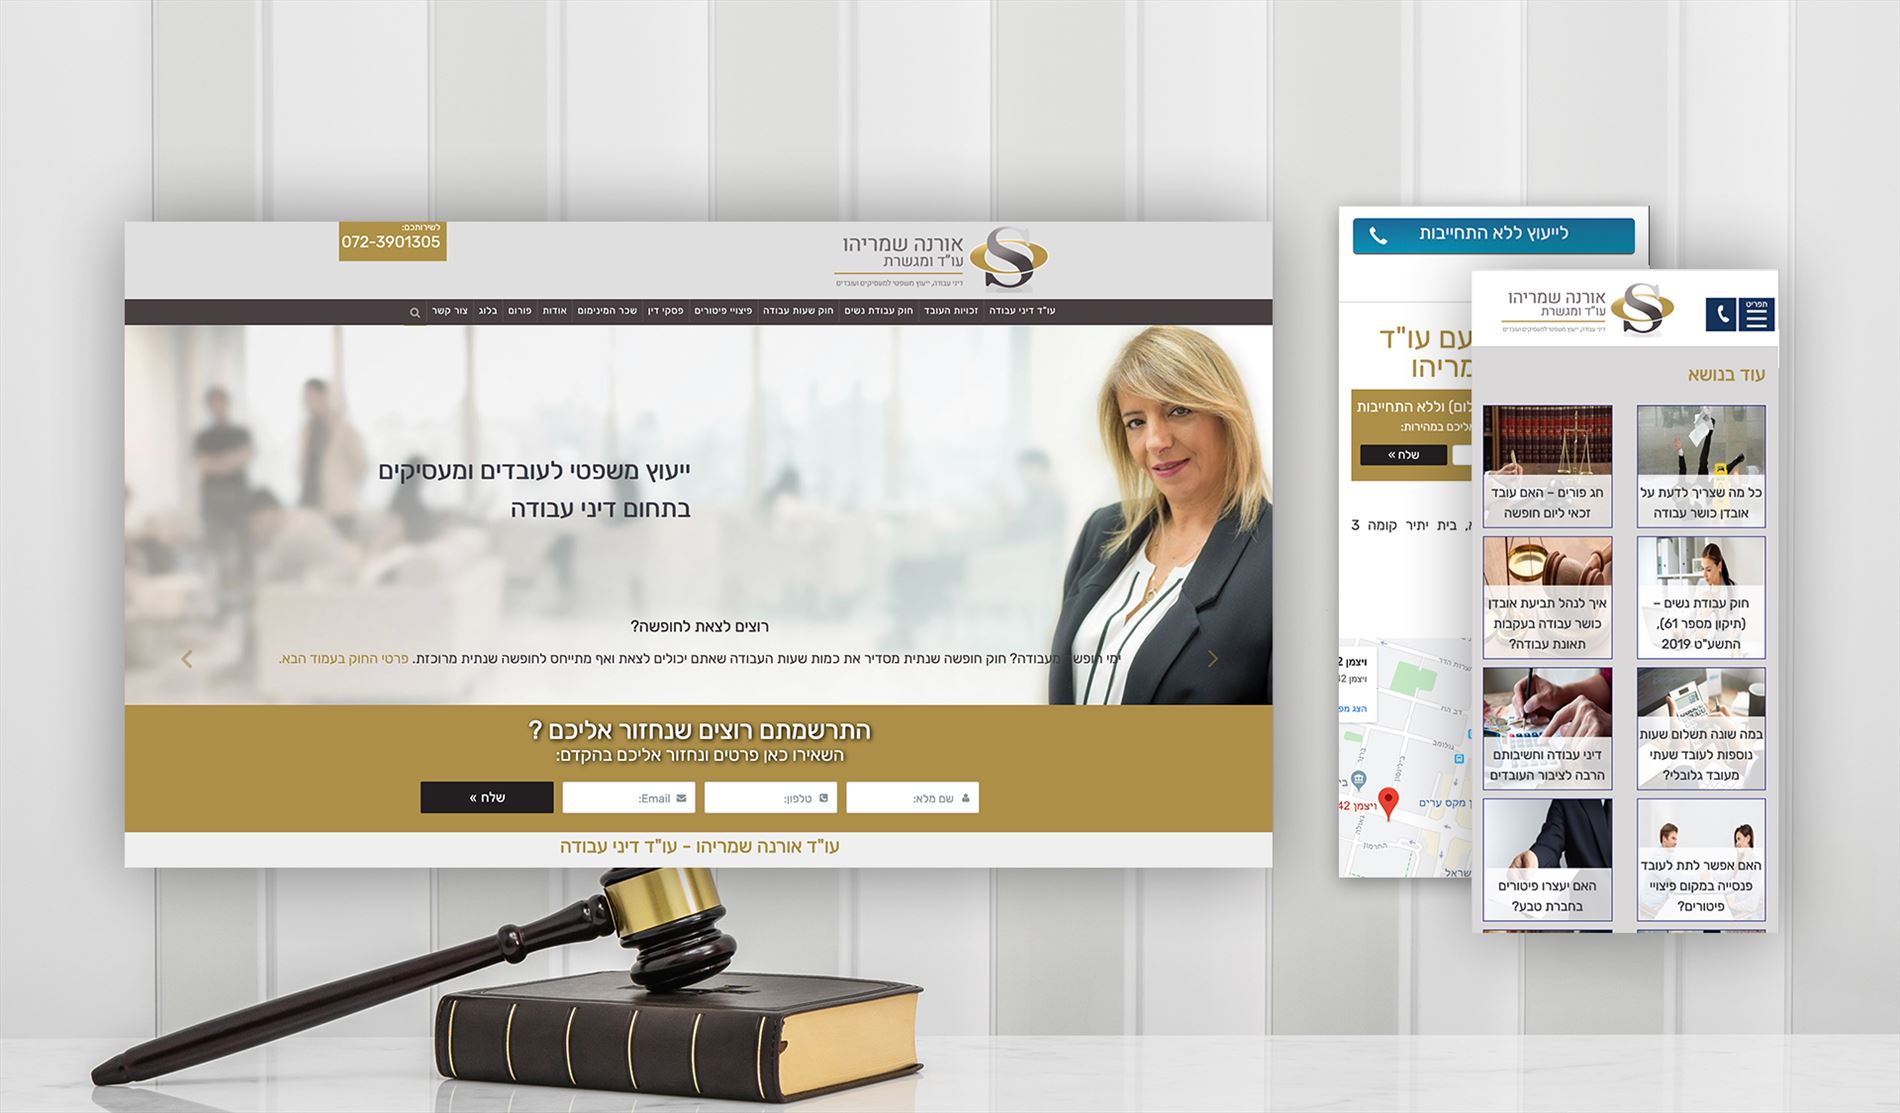 בניית אתר אינטרנט לעורכת הדין אורנה שמריהו